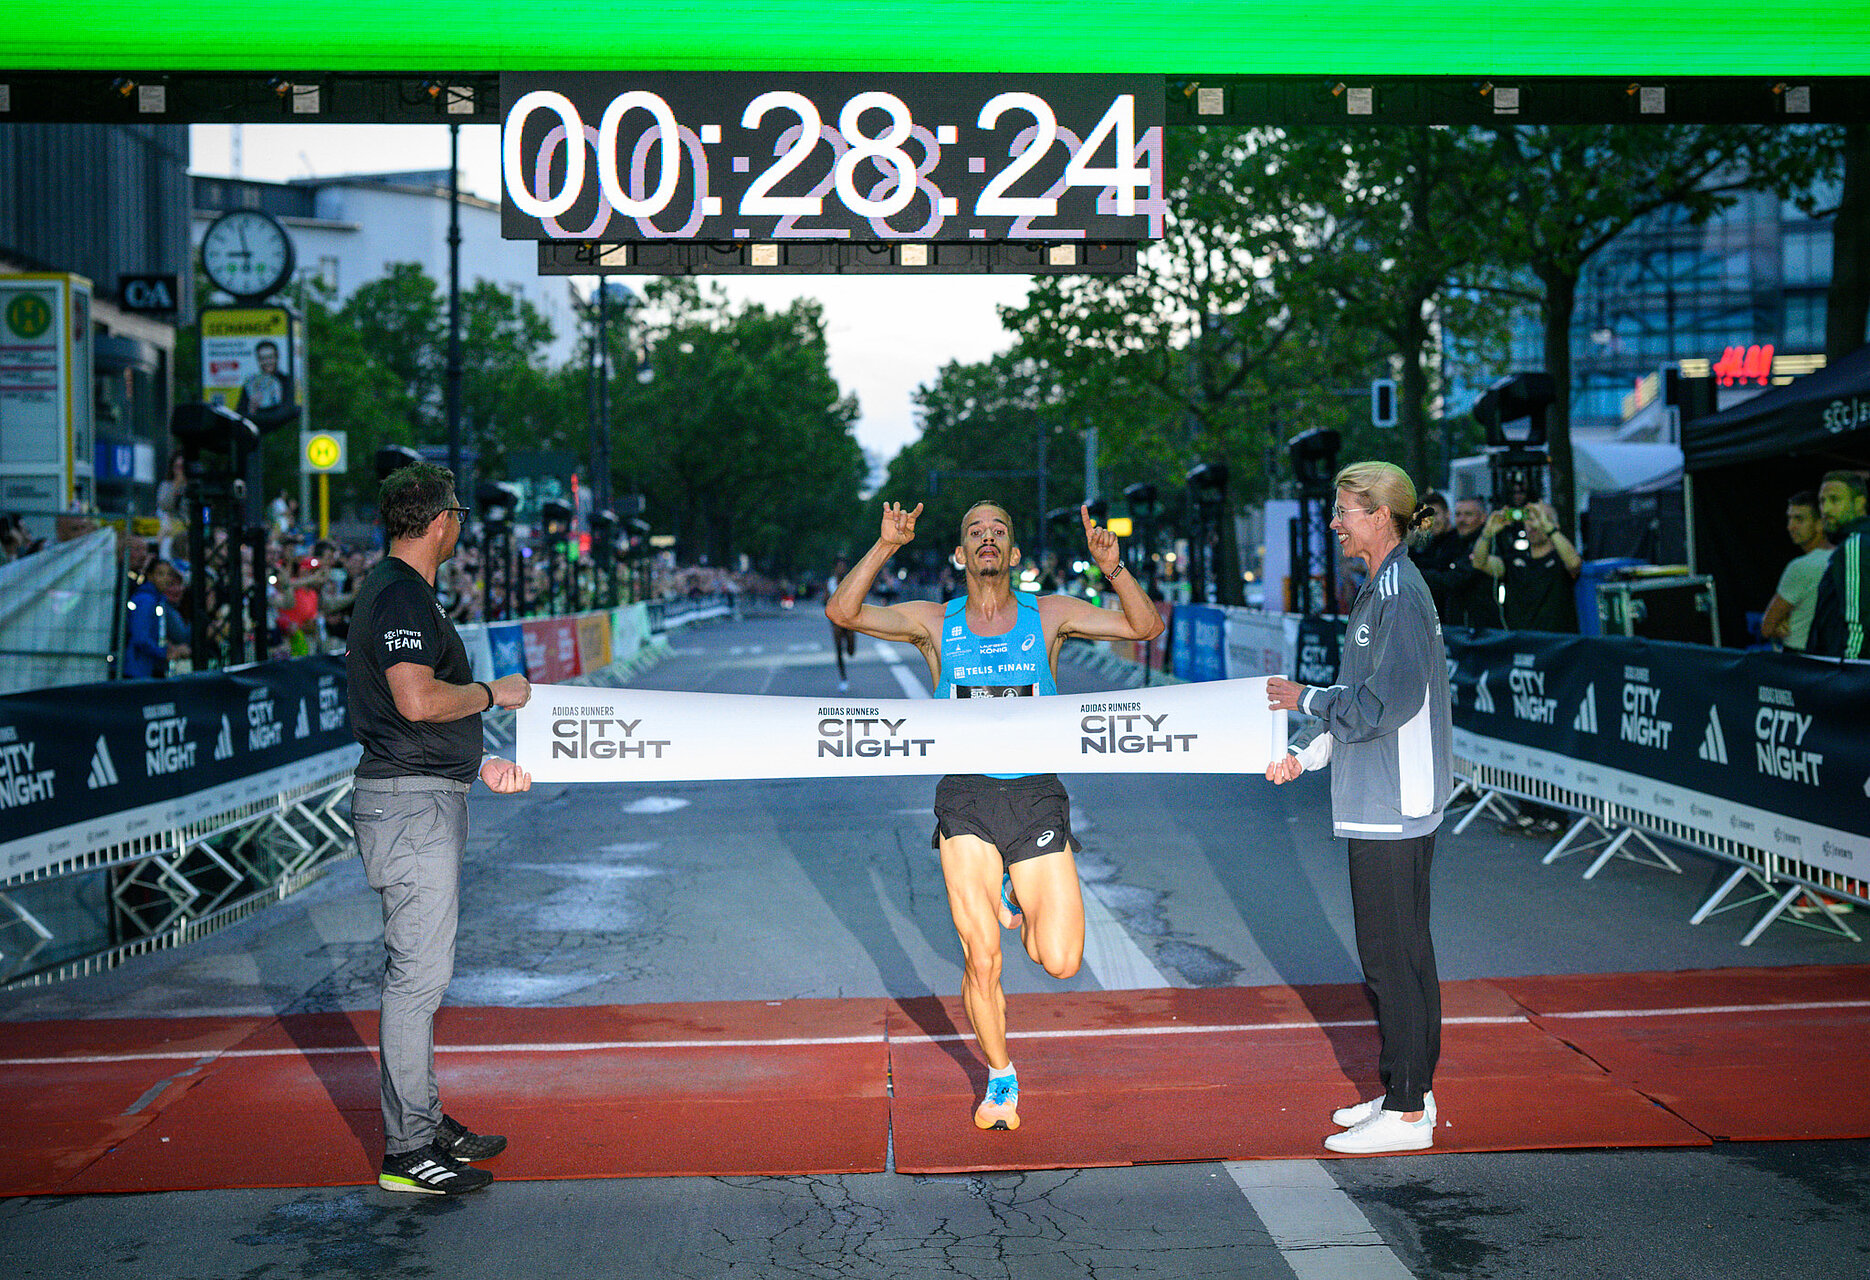 Simon Boch läuft neuen Streckenrekord der adidas Runners City Night © SCC EVENTS